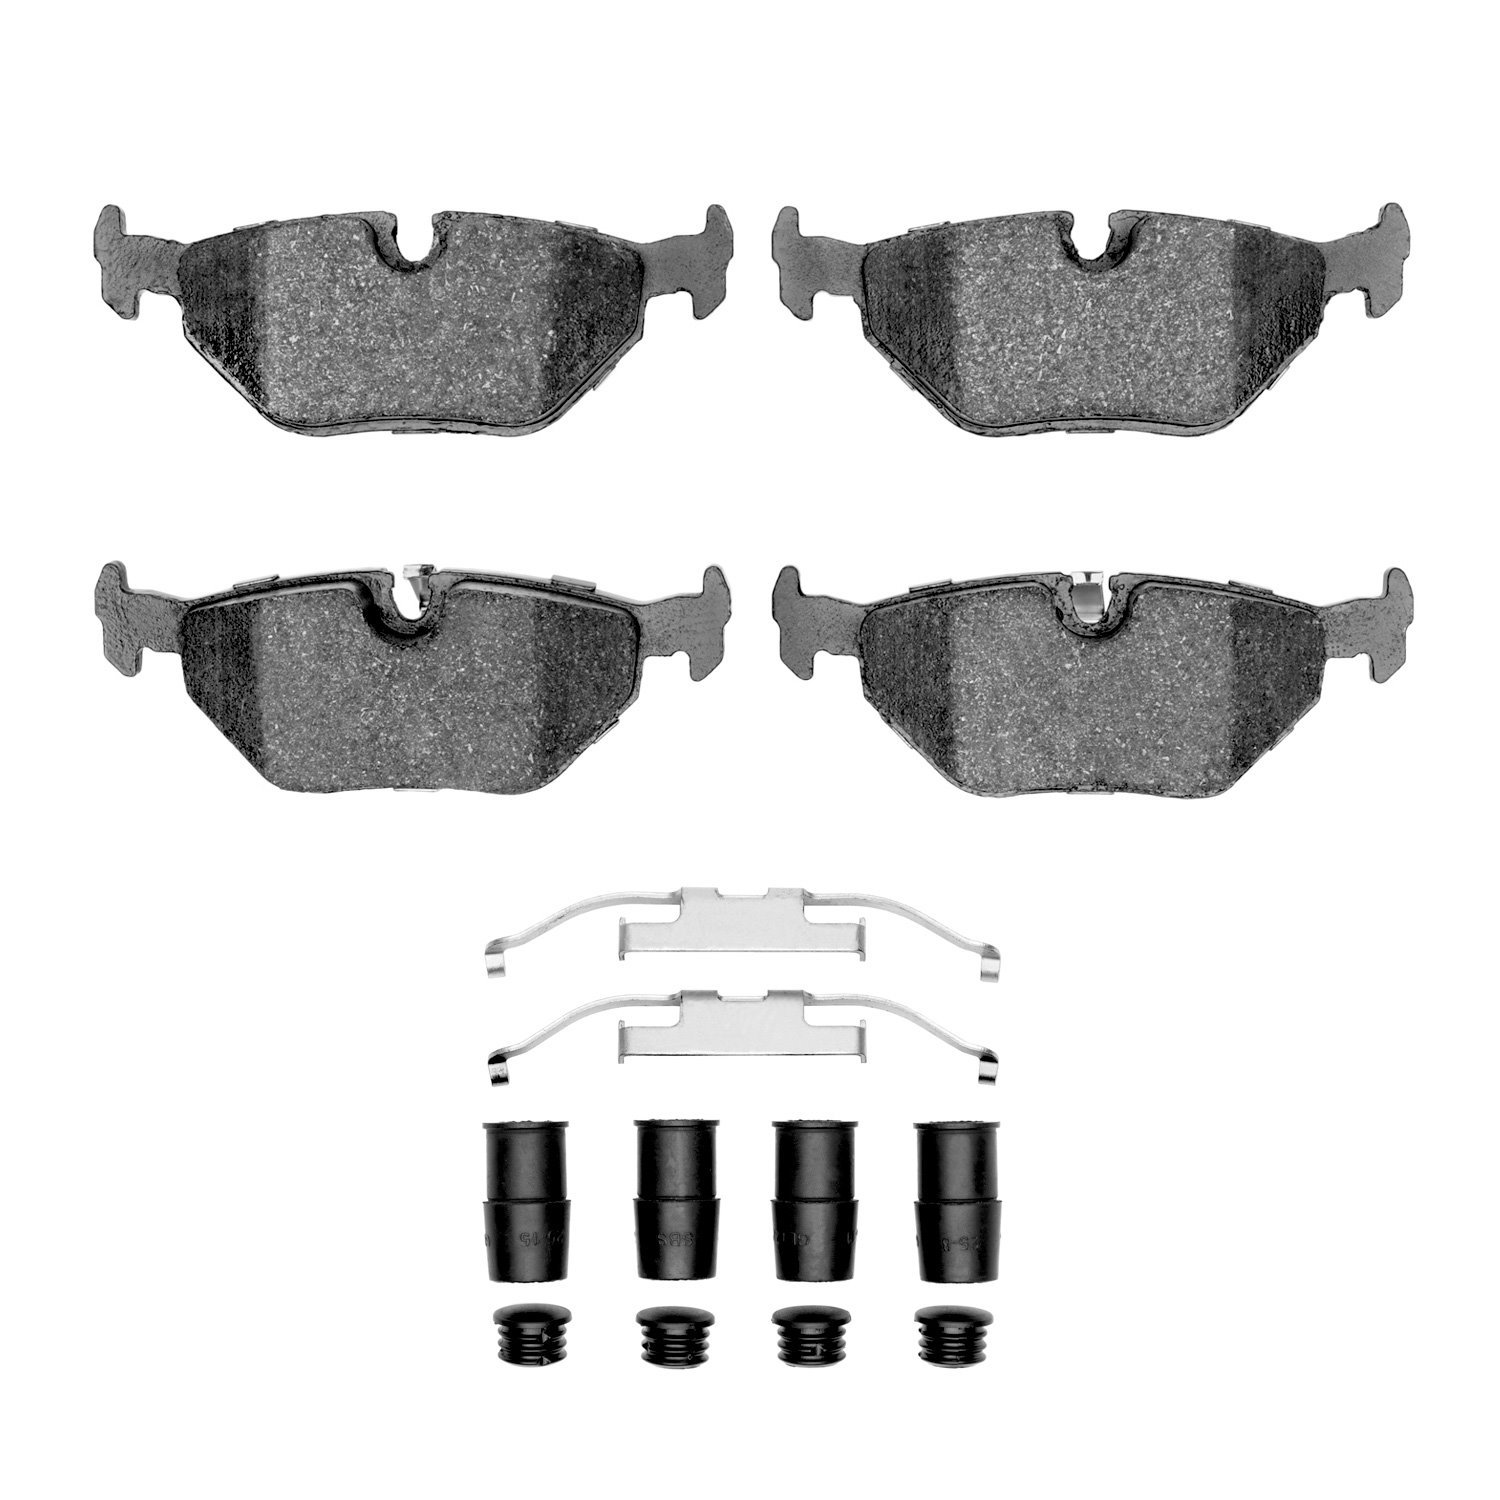 Euro Ceramic Brake Pads & Hardware Kit, 1991-2008 BMW, Position: Rear